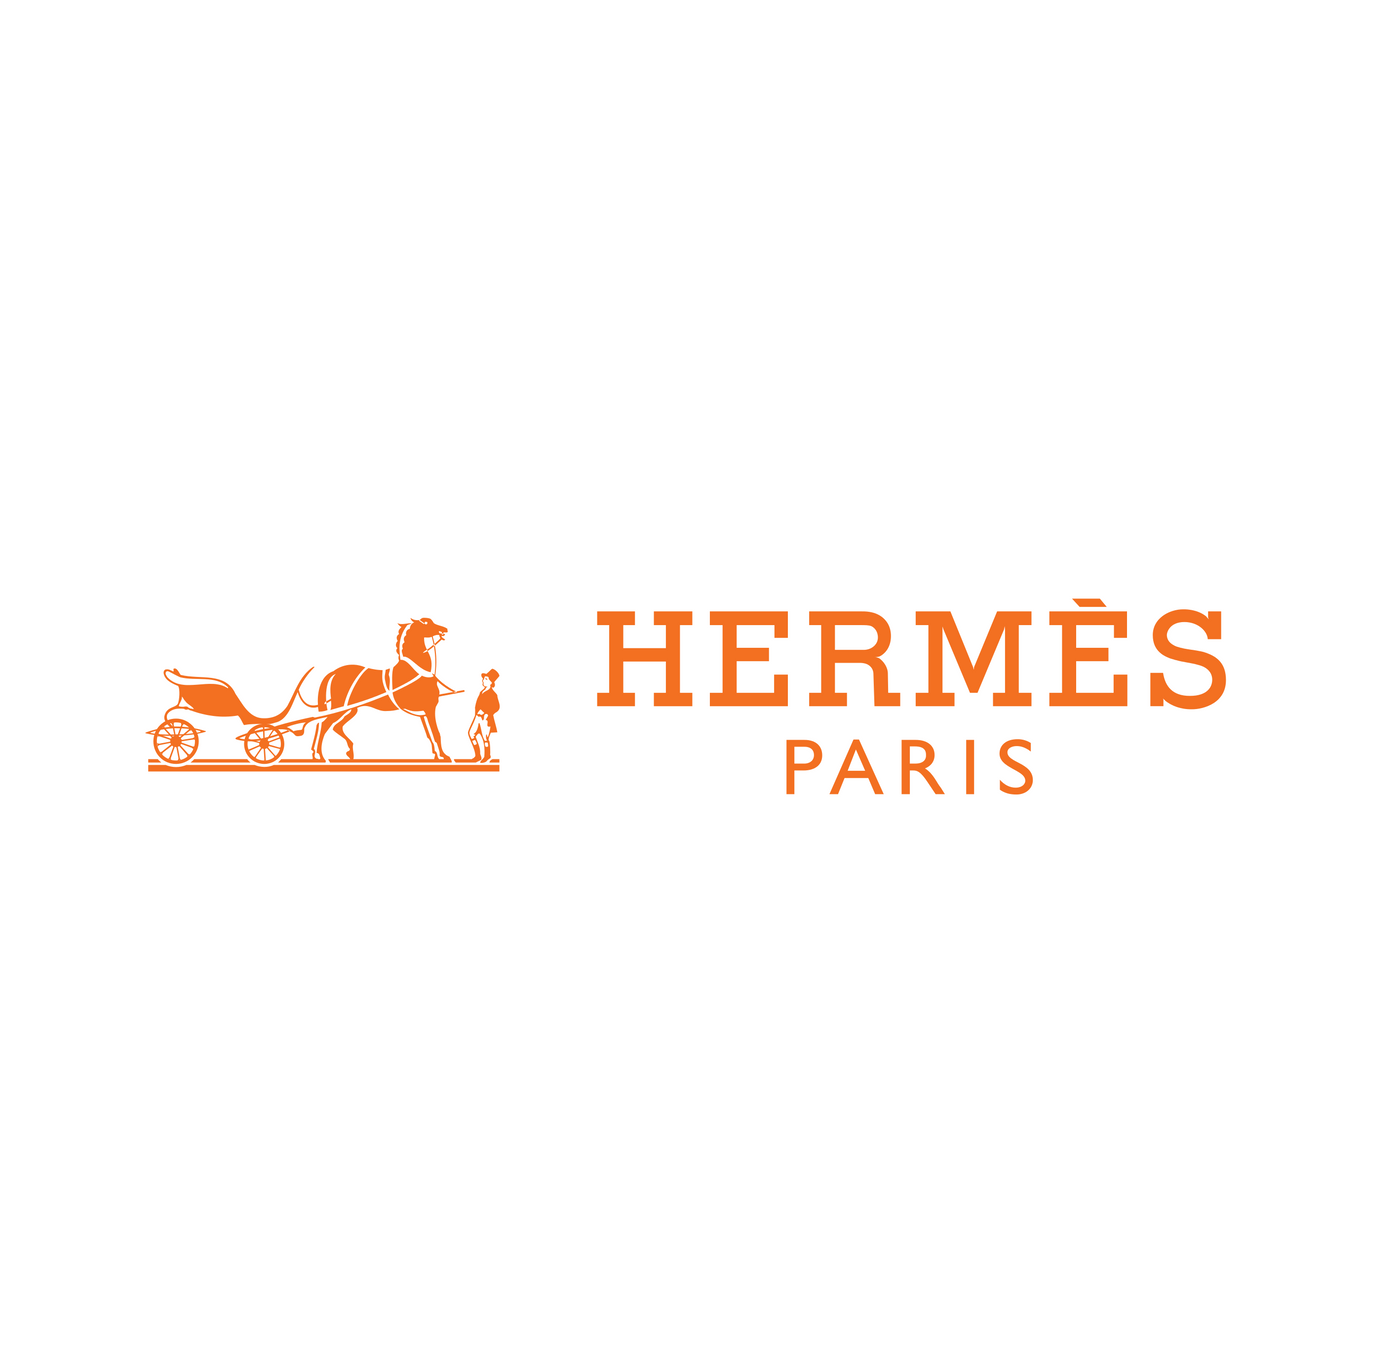 Women’s Hermès Fragrances